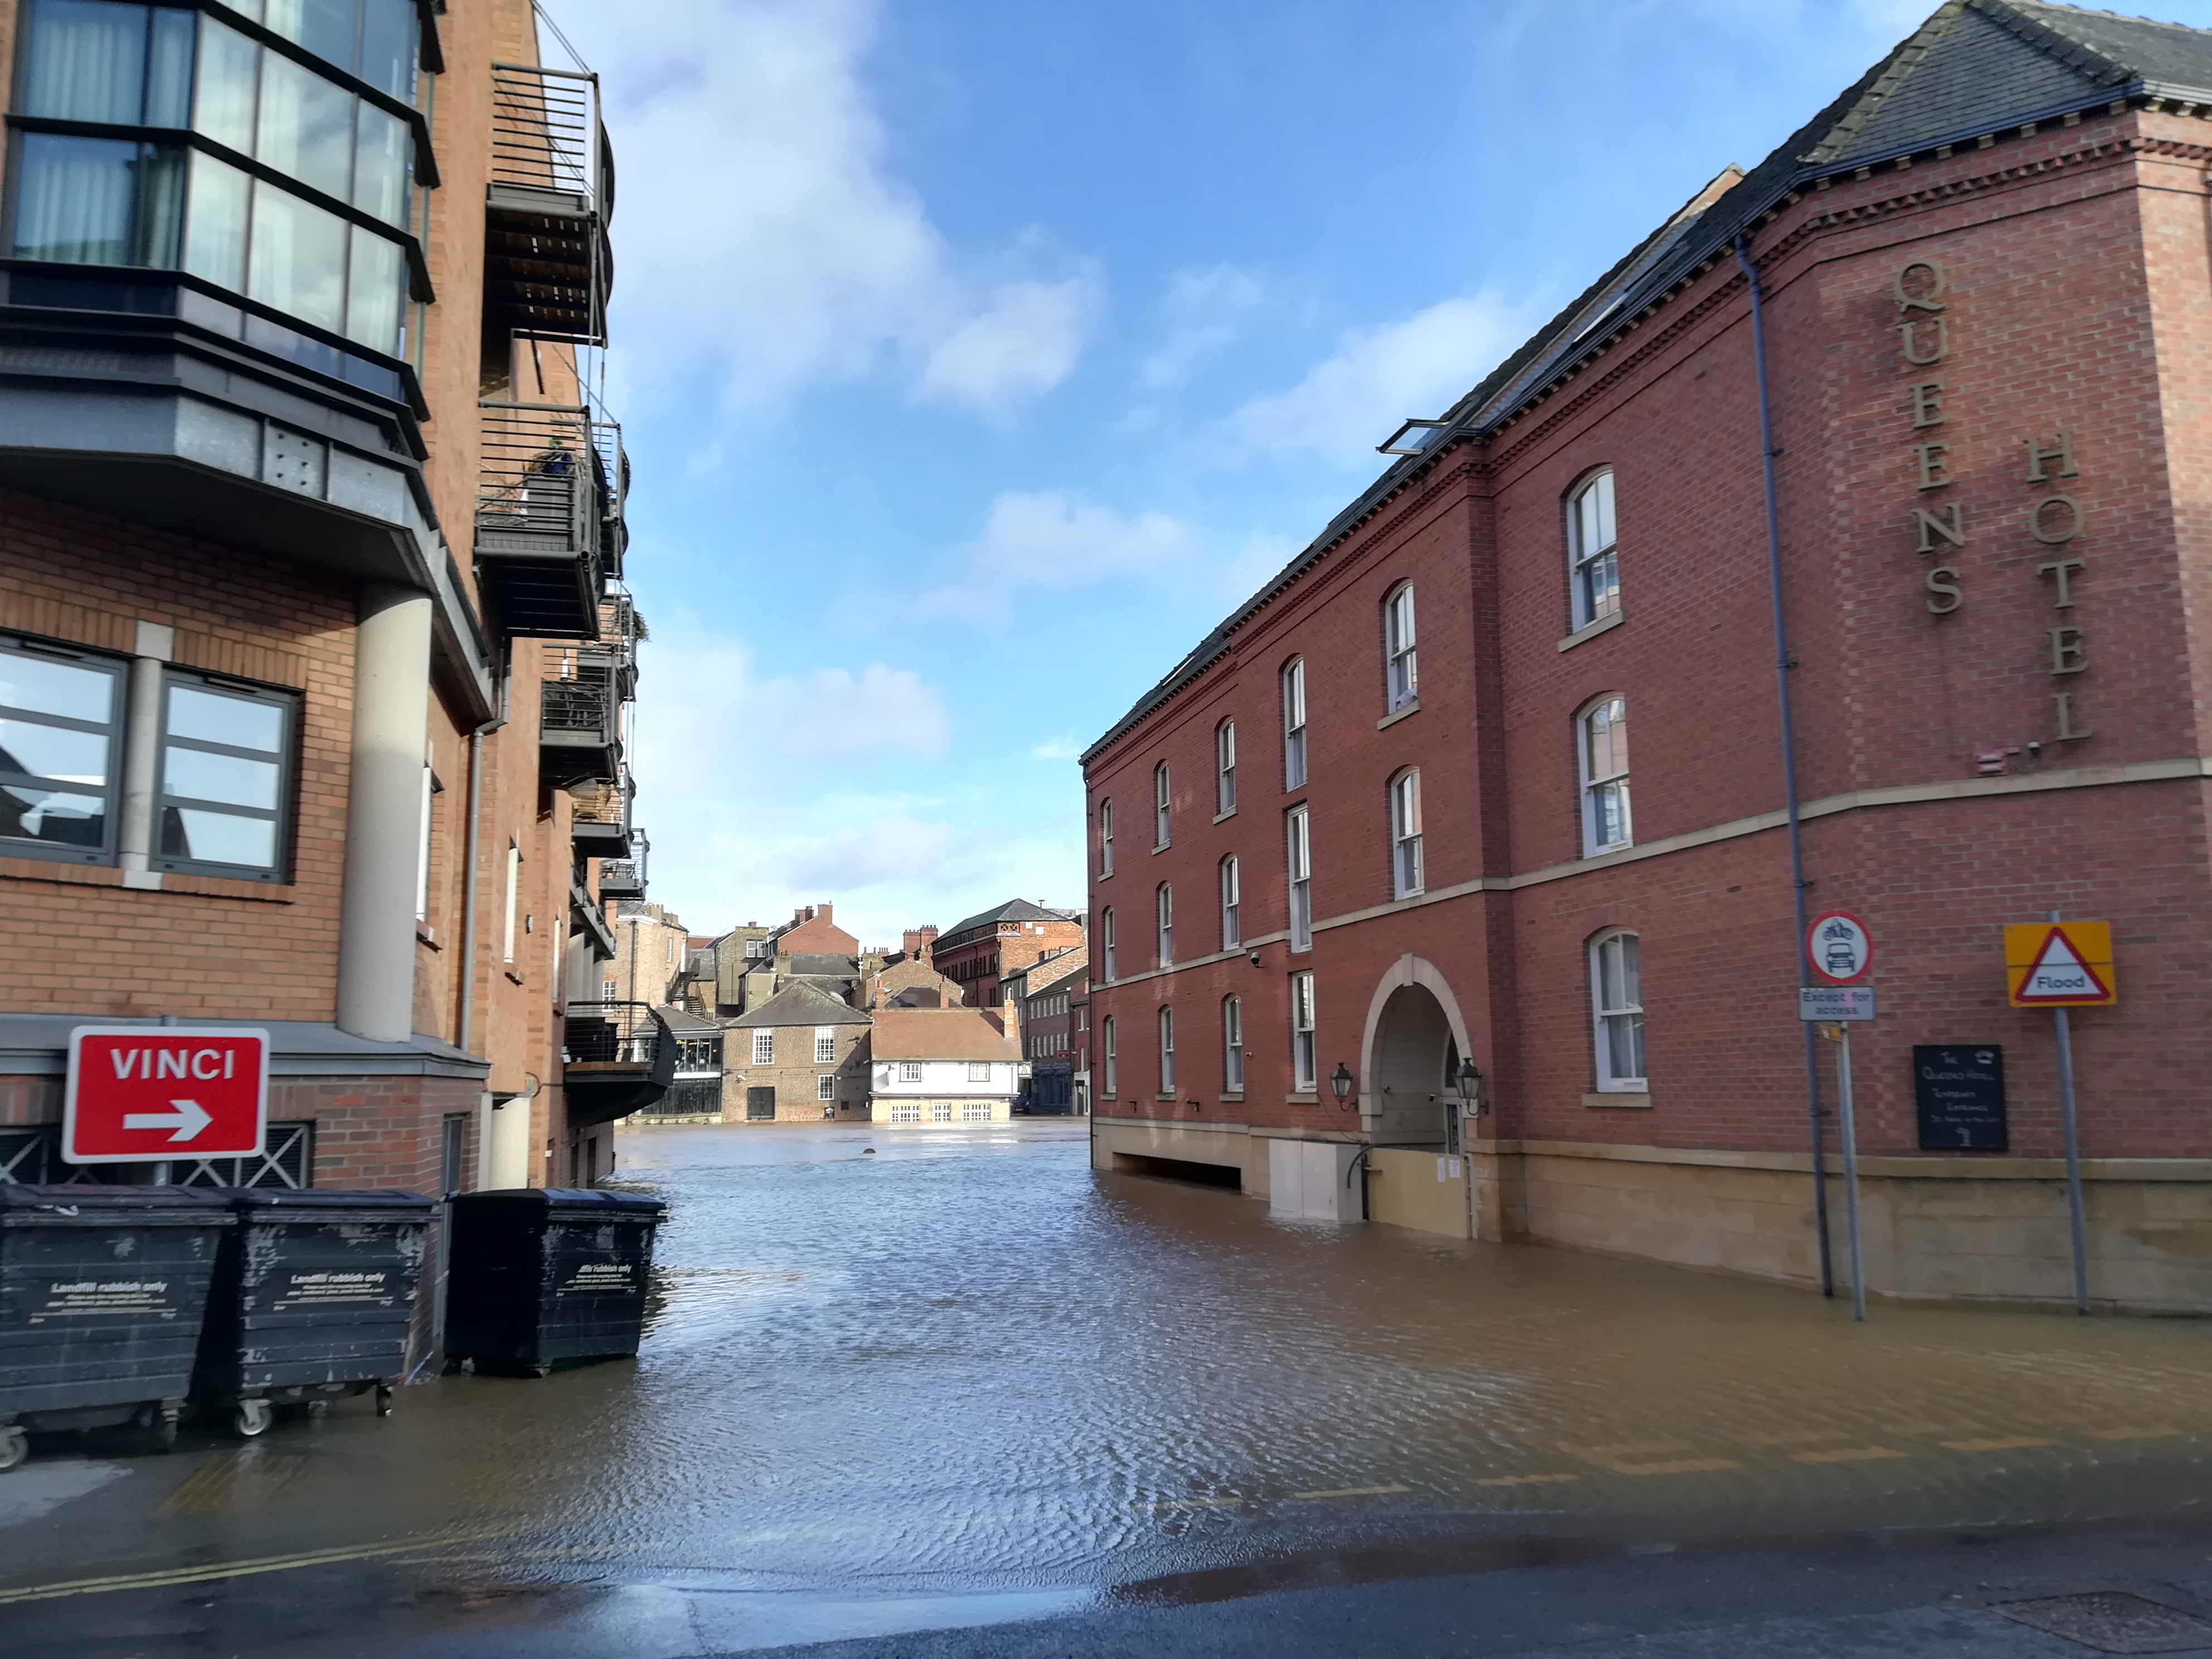 Skeldergate during the February 2020 floods